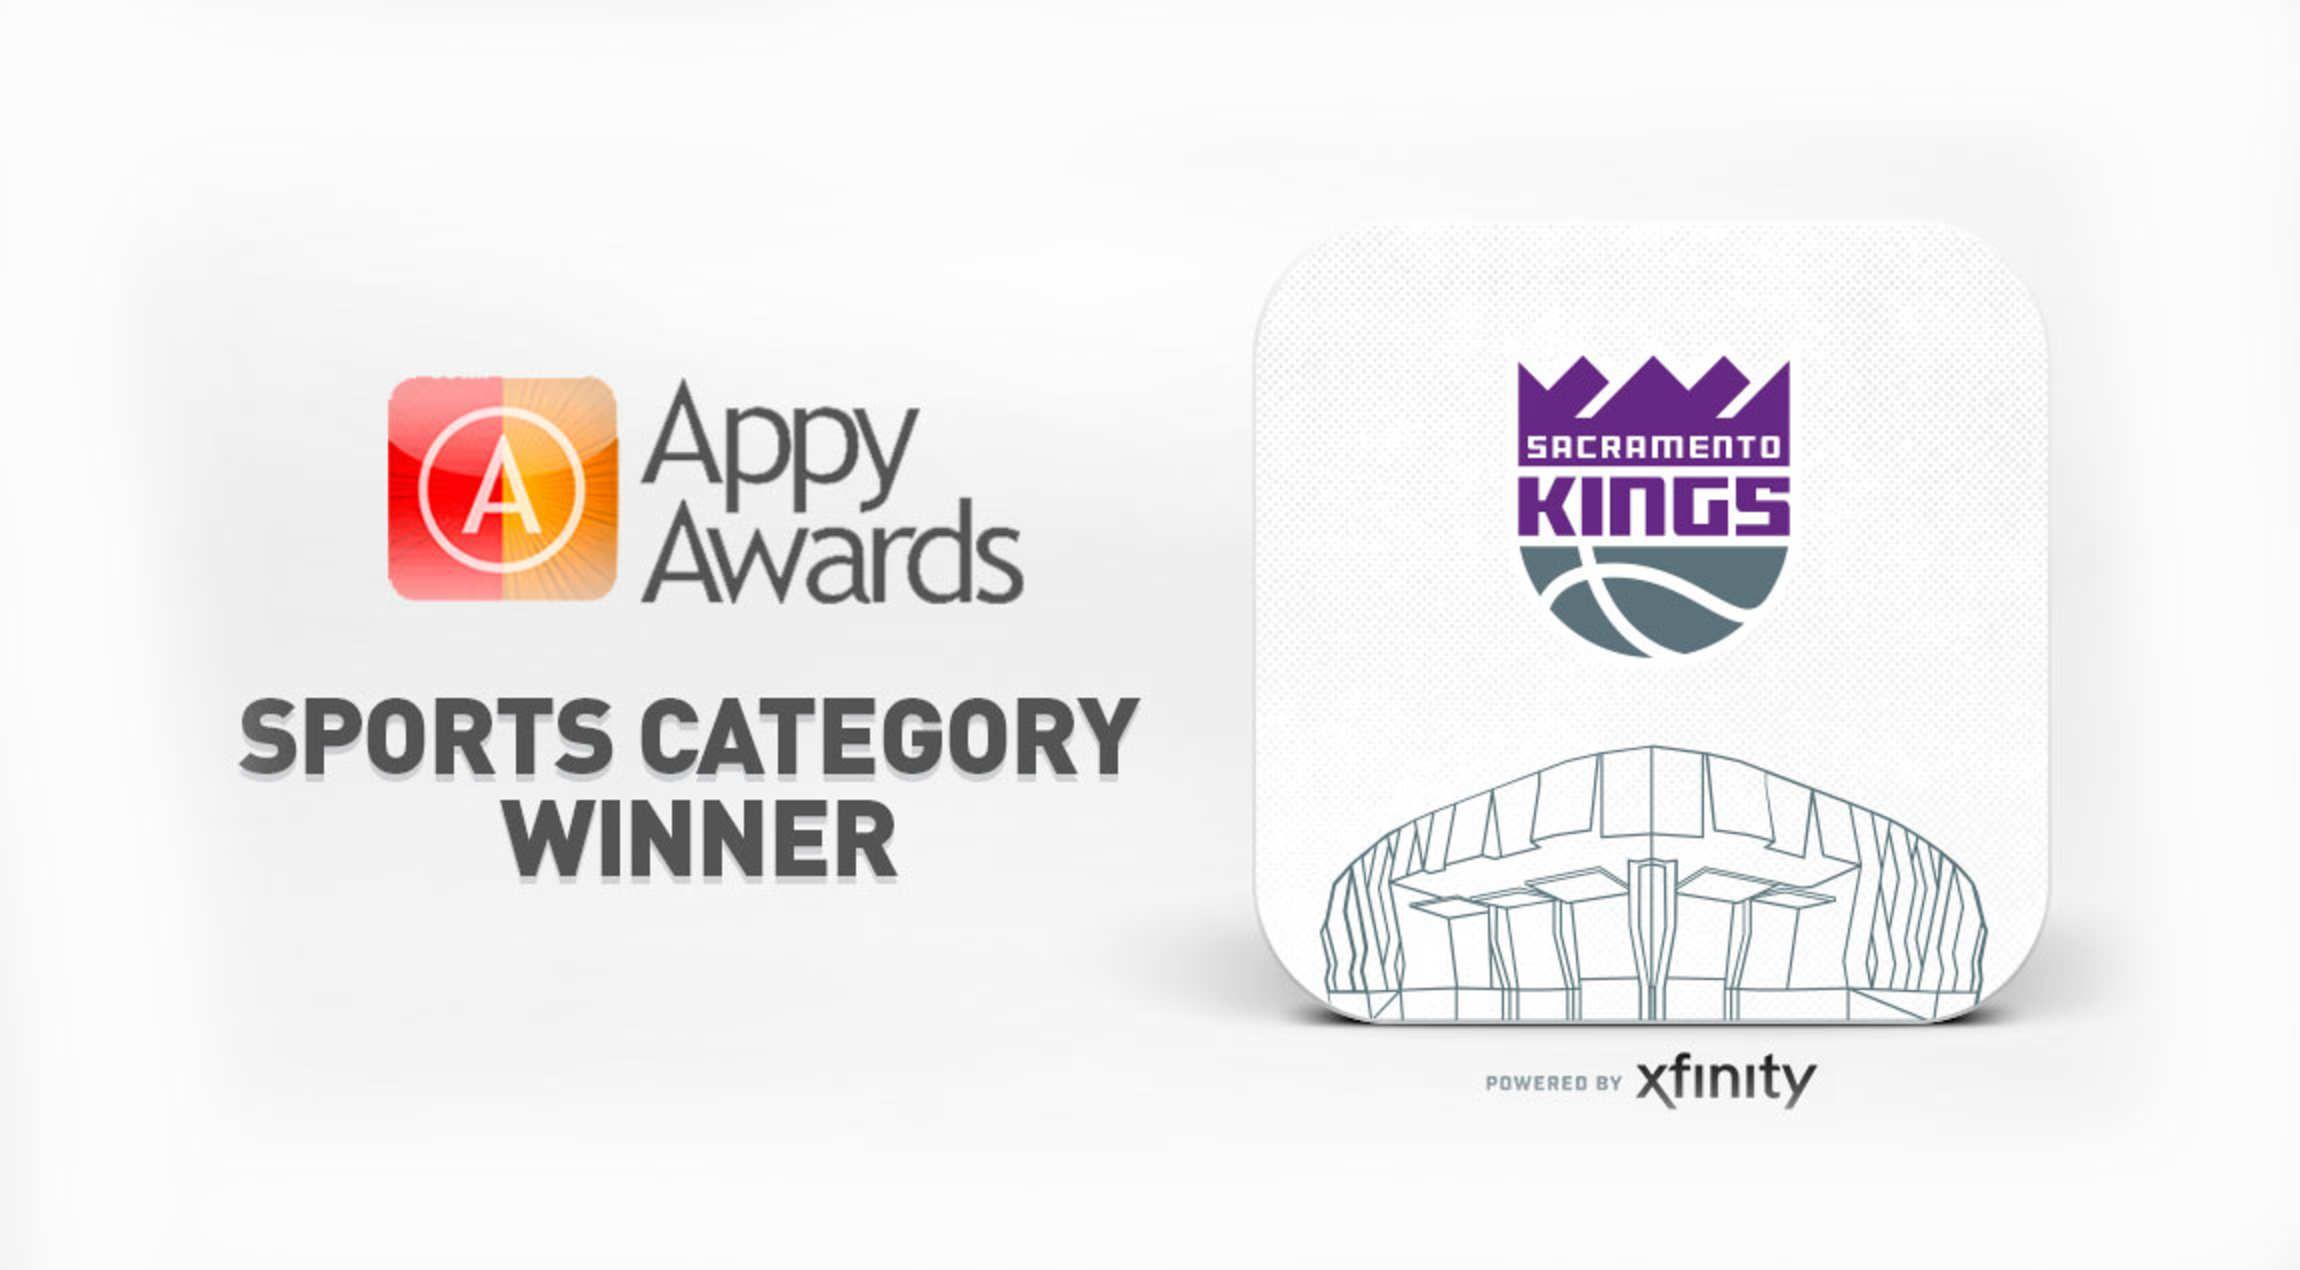 Golden 1 Logo - Sacramento Kings + Golden 1 Center App Wins Industry-Leading Award ...